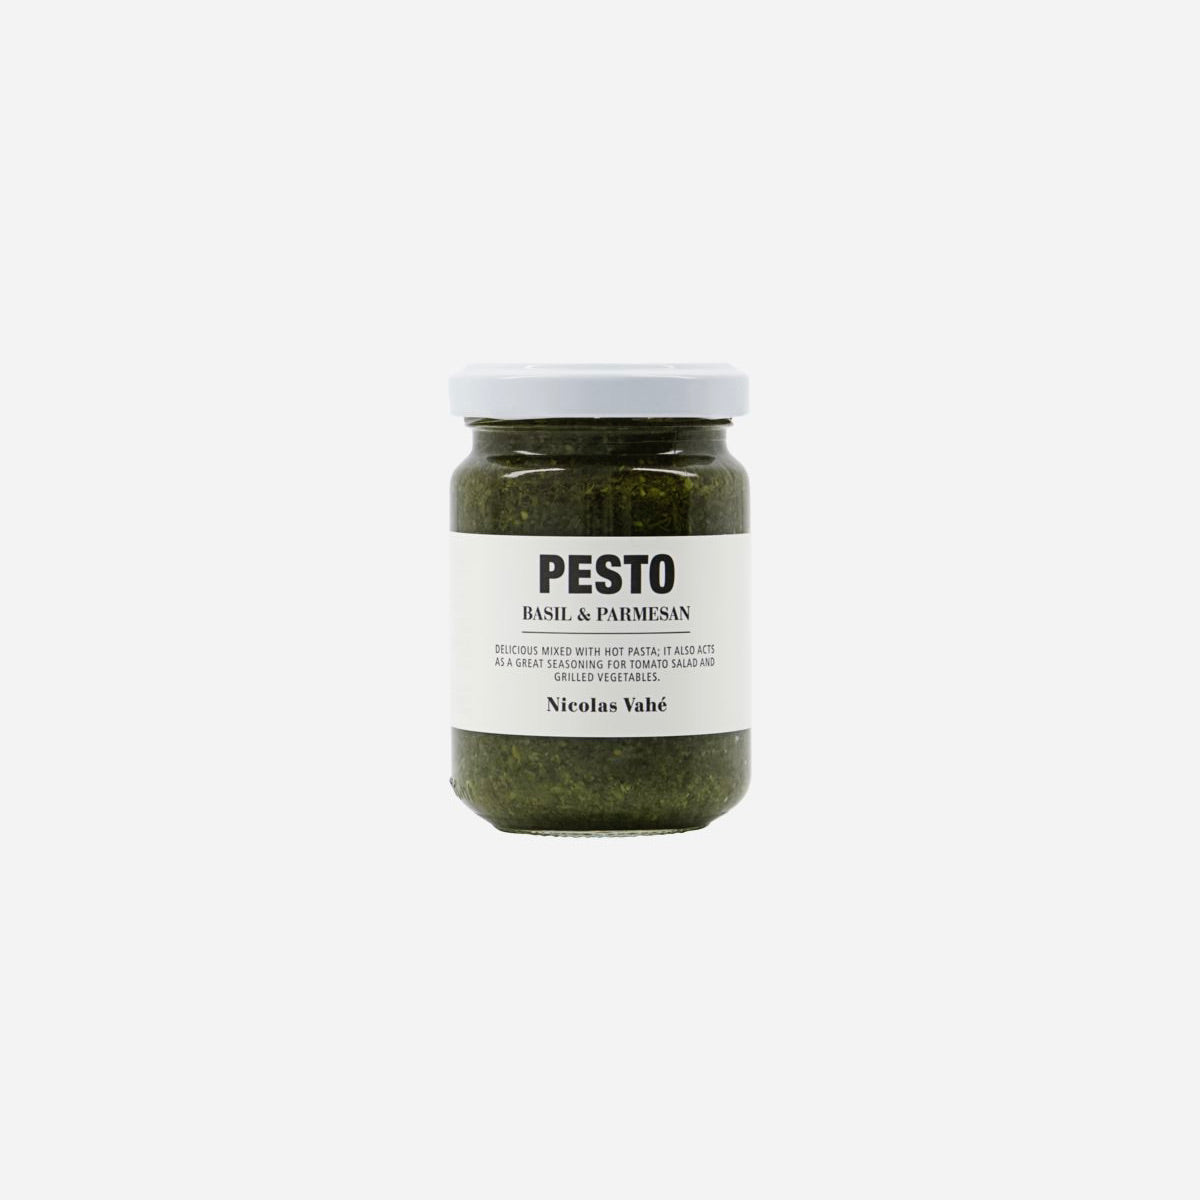 PESTO - BASIL & PARMESAN